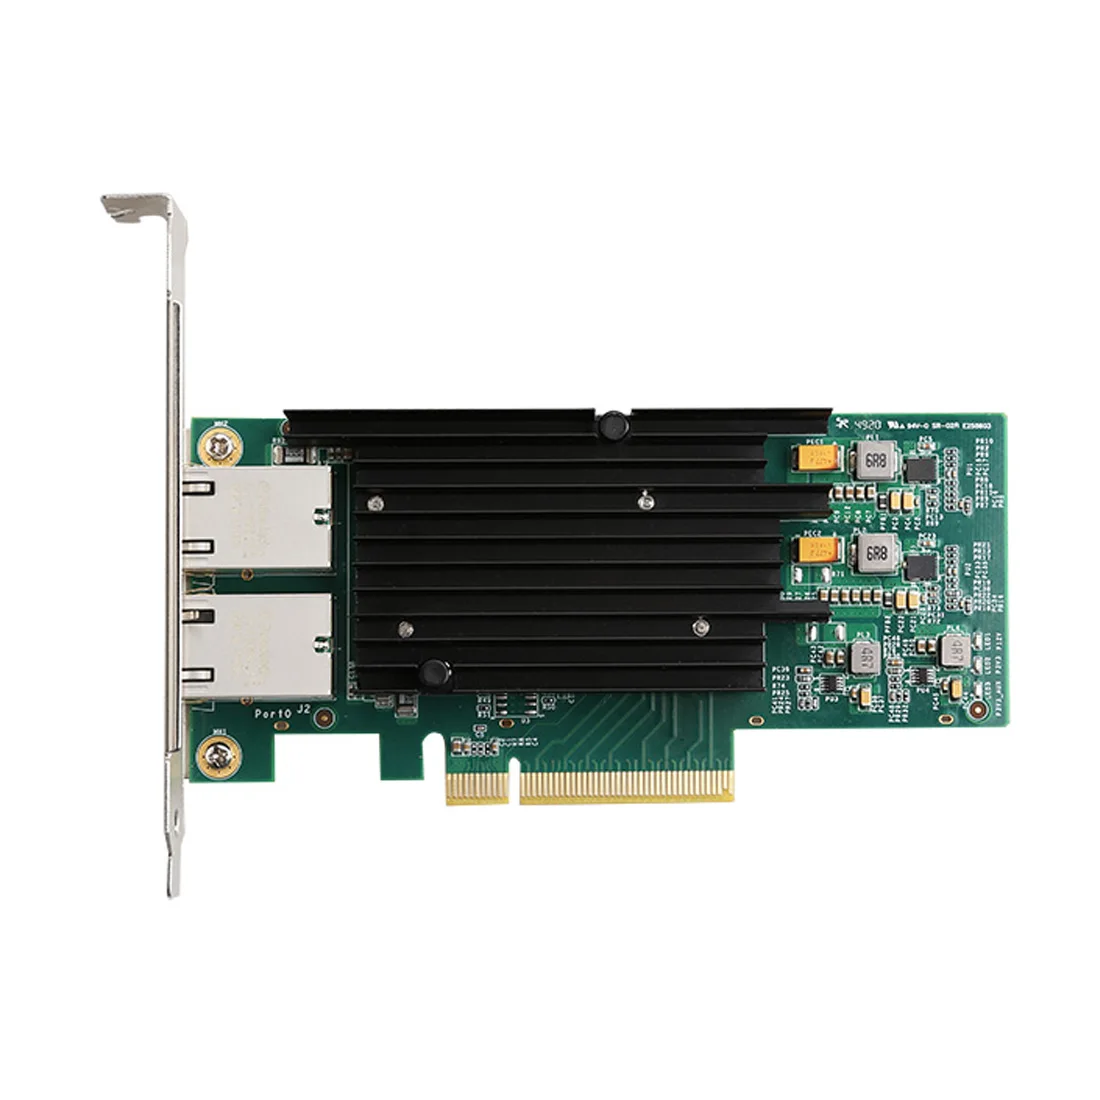 PCIE X8 10000M   PCIE 10  Ethernet   RJ45 Lan    Intelx540 10Gbs Pci-E  